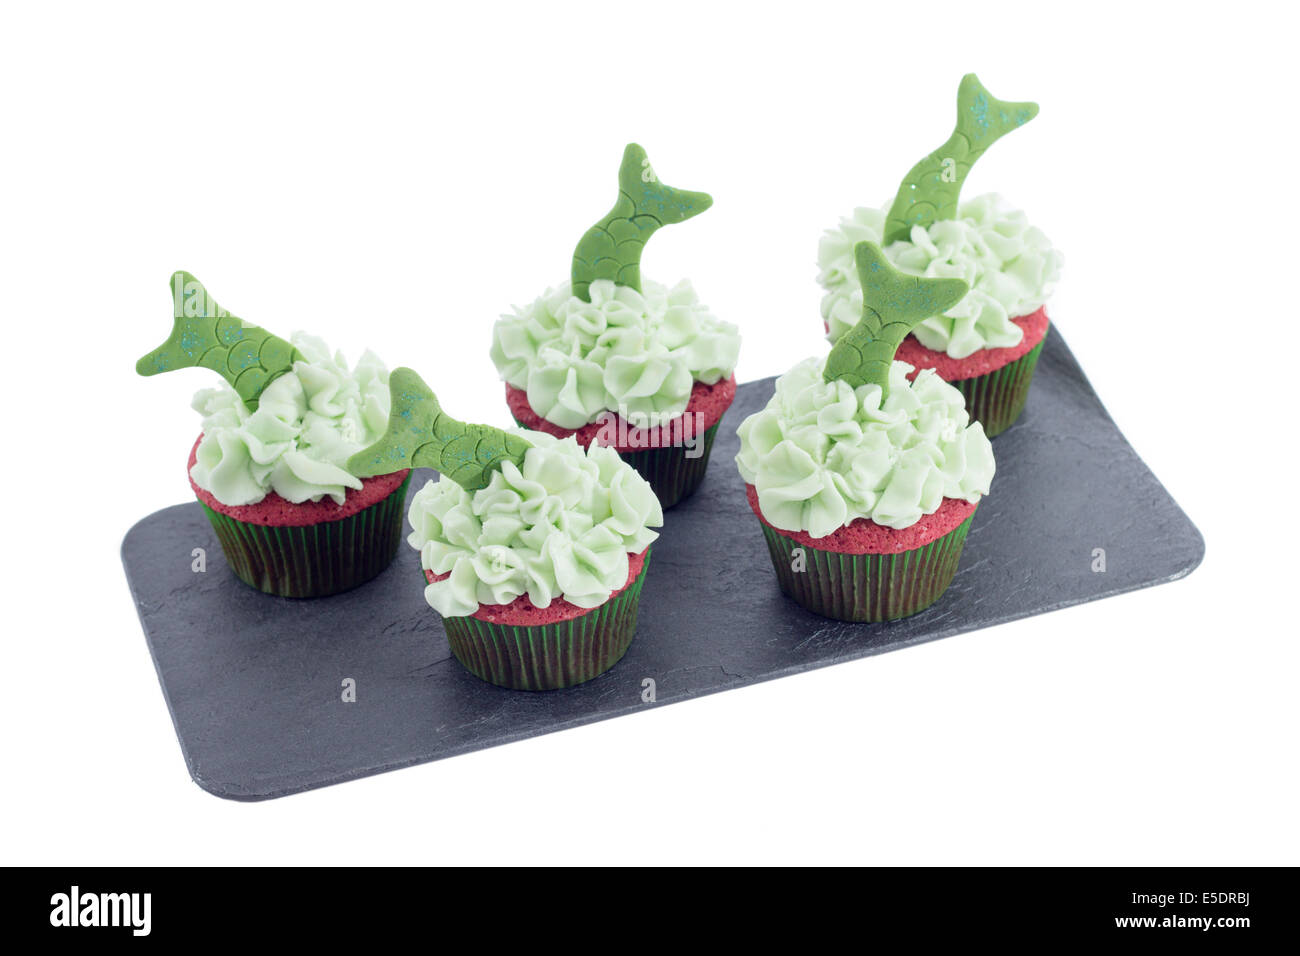 Cinq délicieux cupcakes avec glaçage vert et queues de poisson sur un plateau de schiste isolated on white Banque D'Images